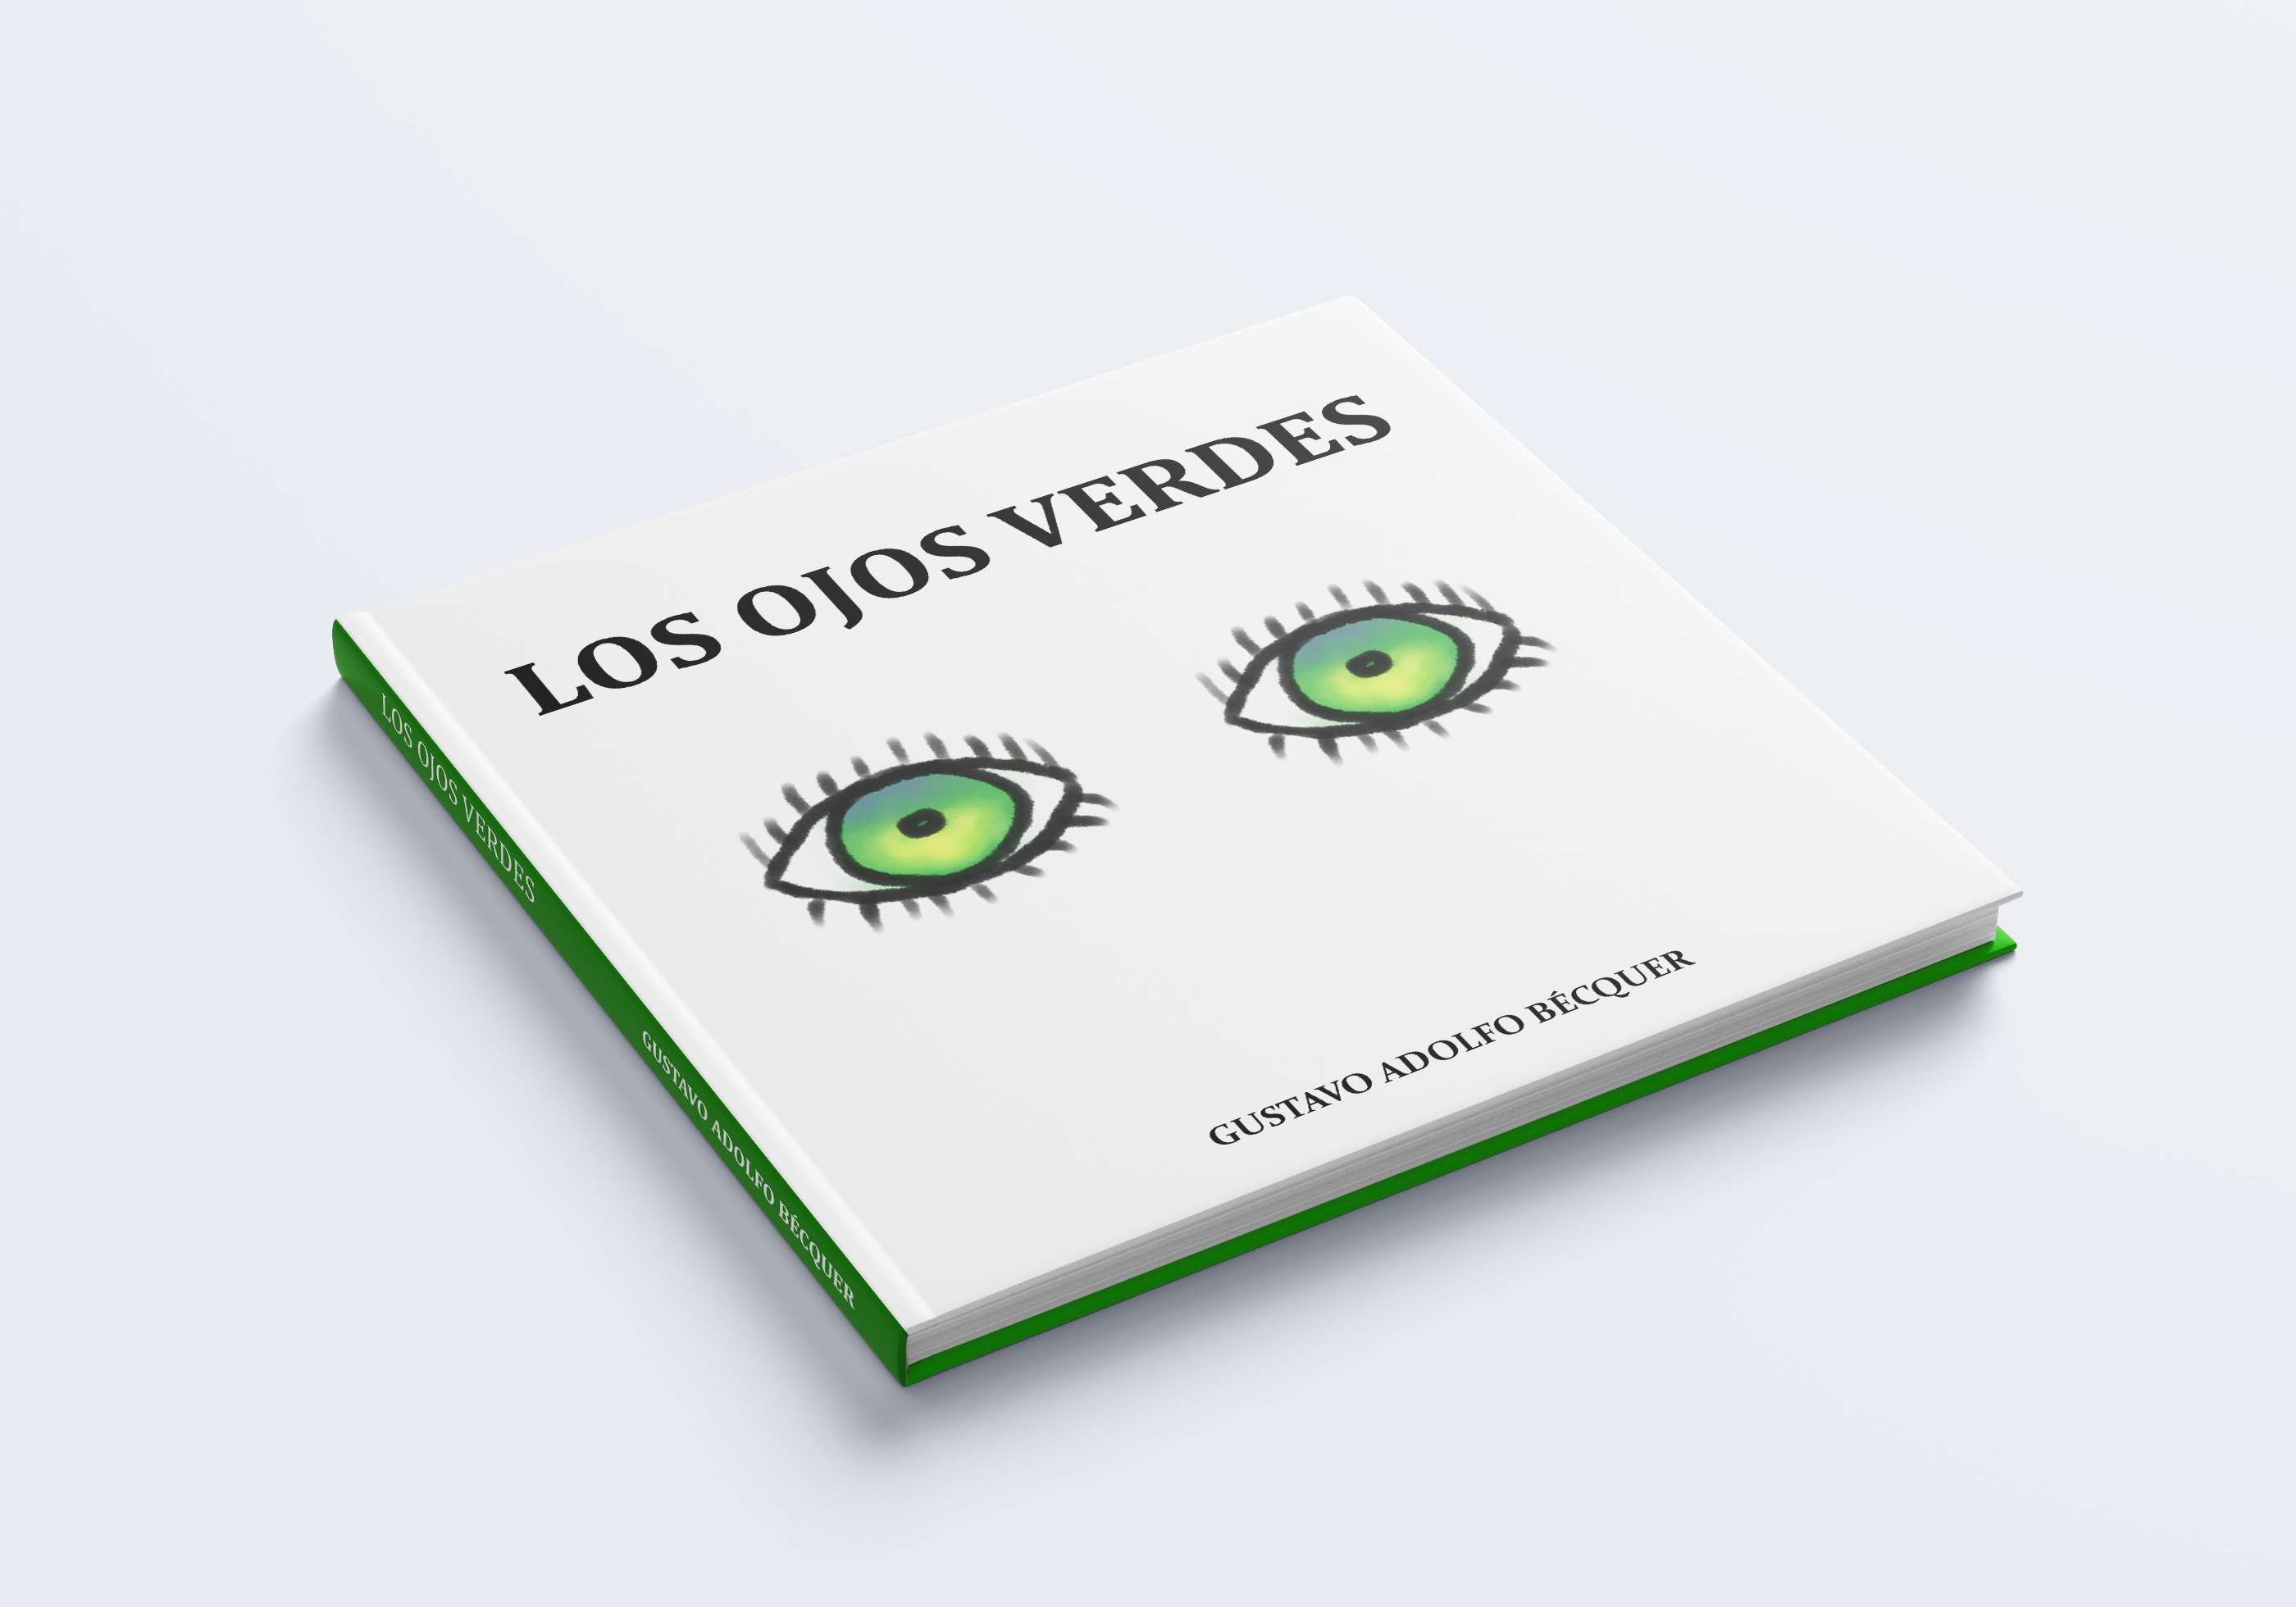 Los ojos verdes by Lorca Romero Sanz - Creative Work